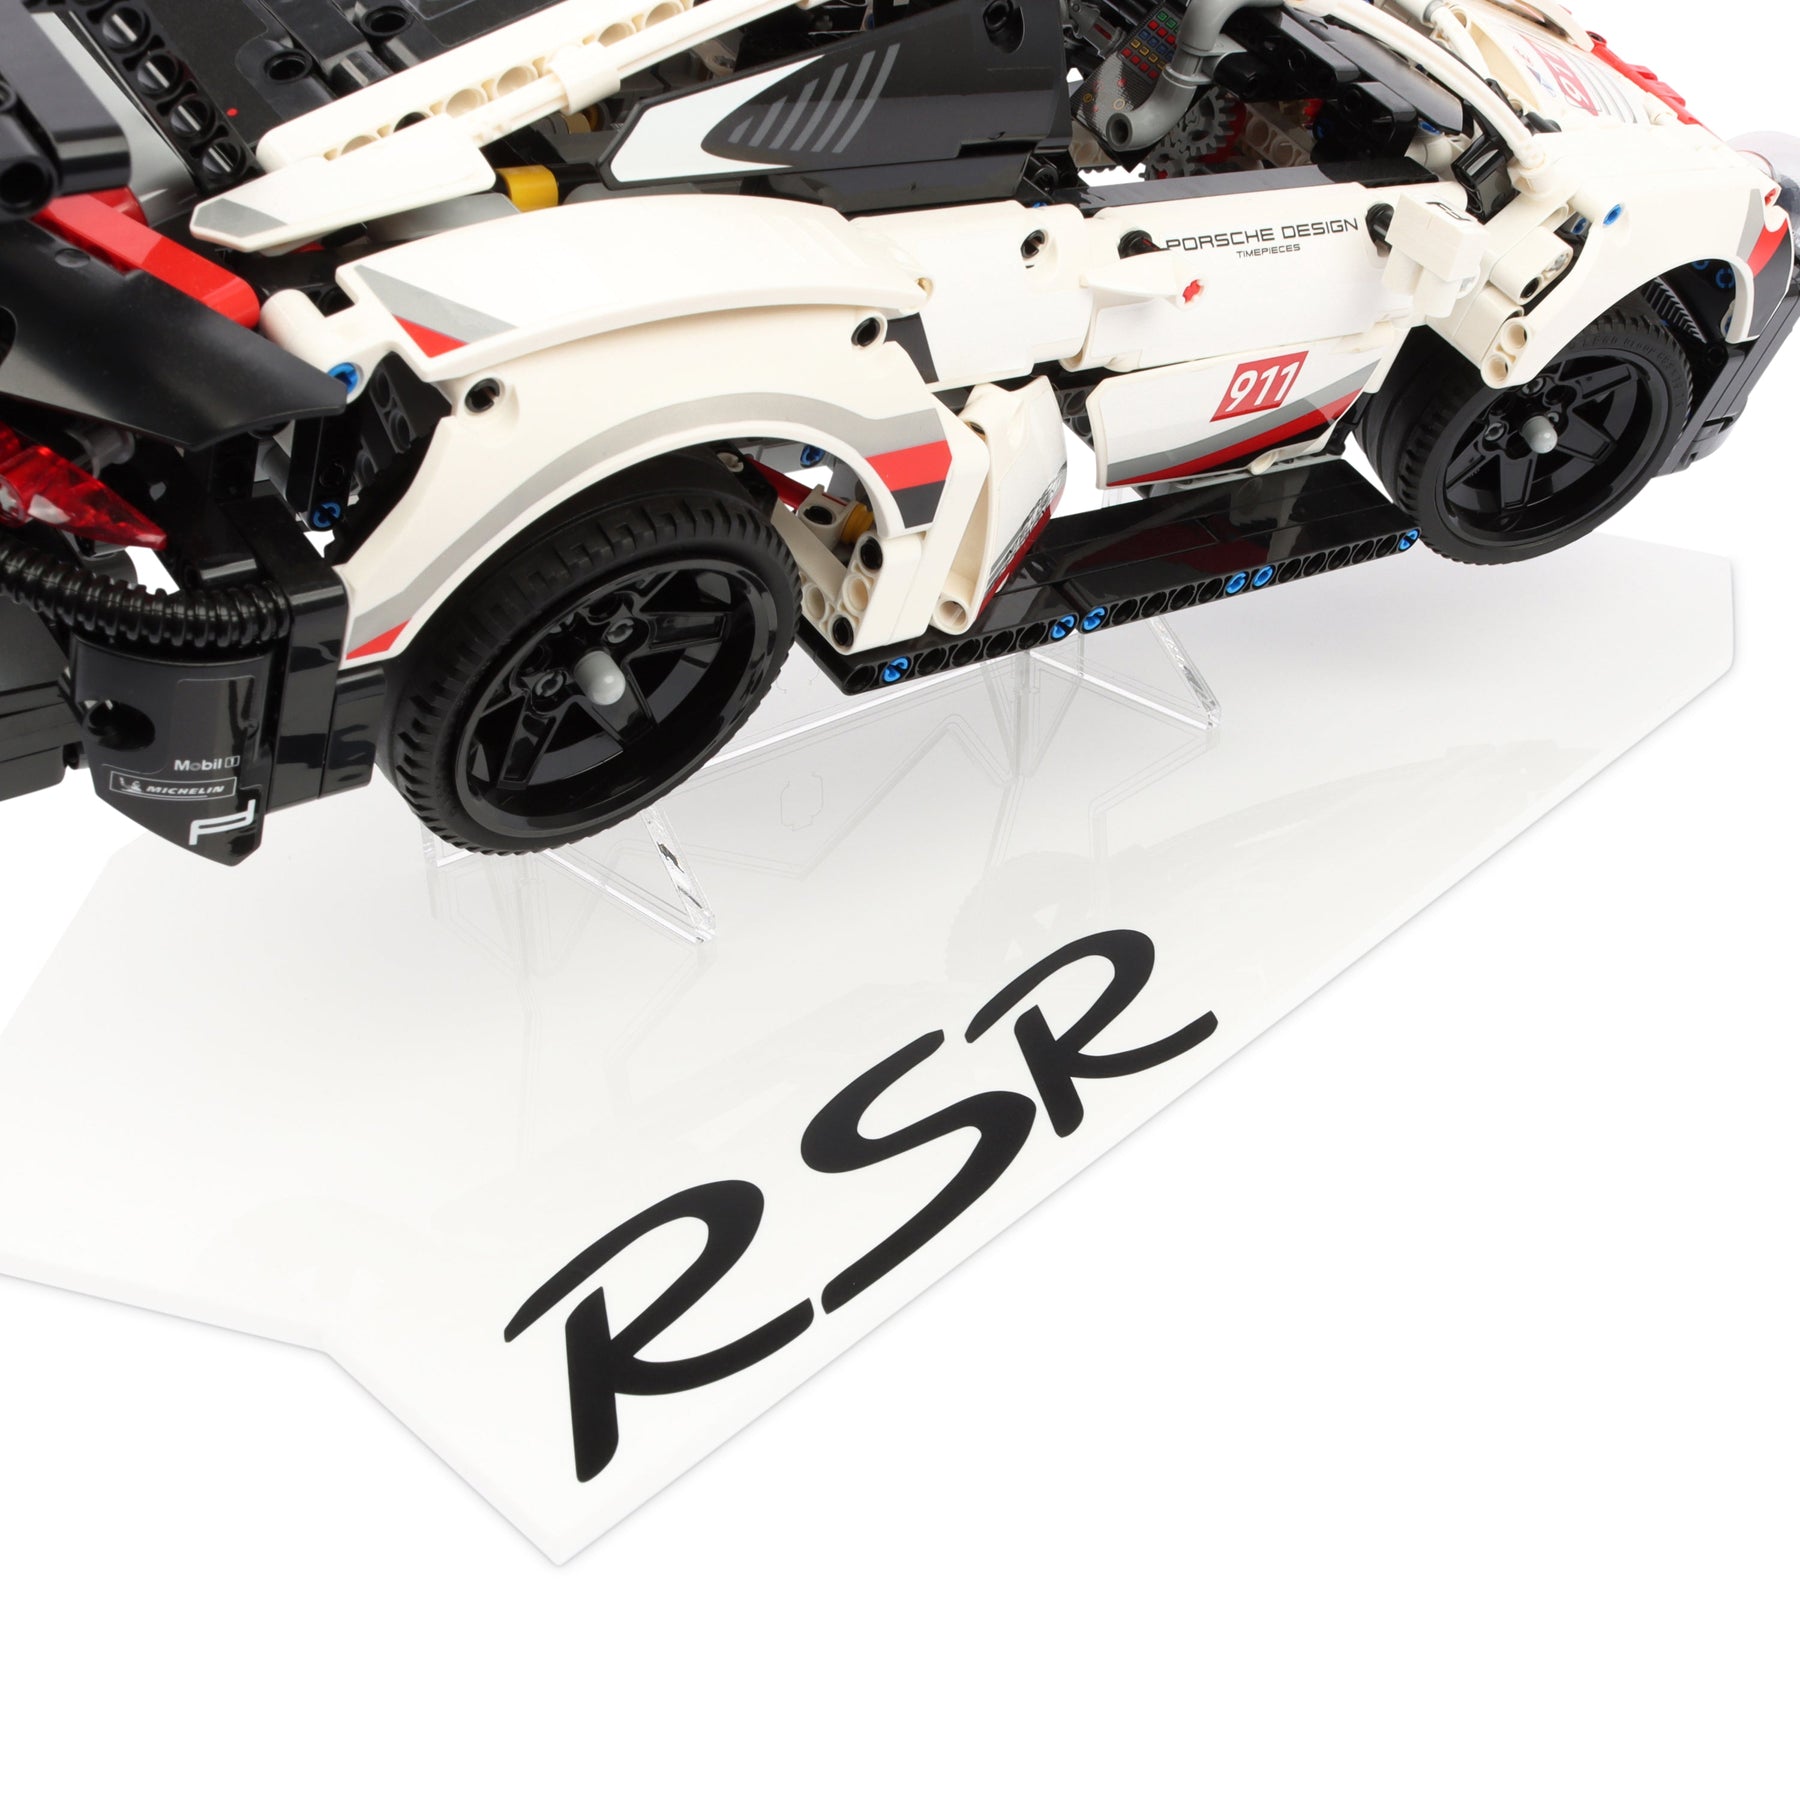 LEGO Porsche 911 RSR 42096 Display Stand